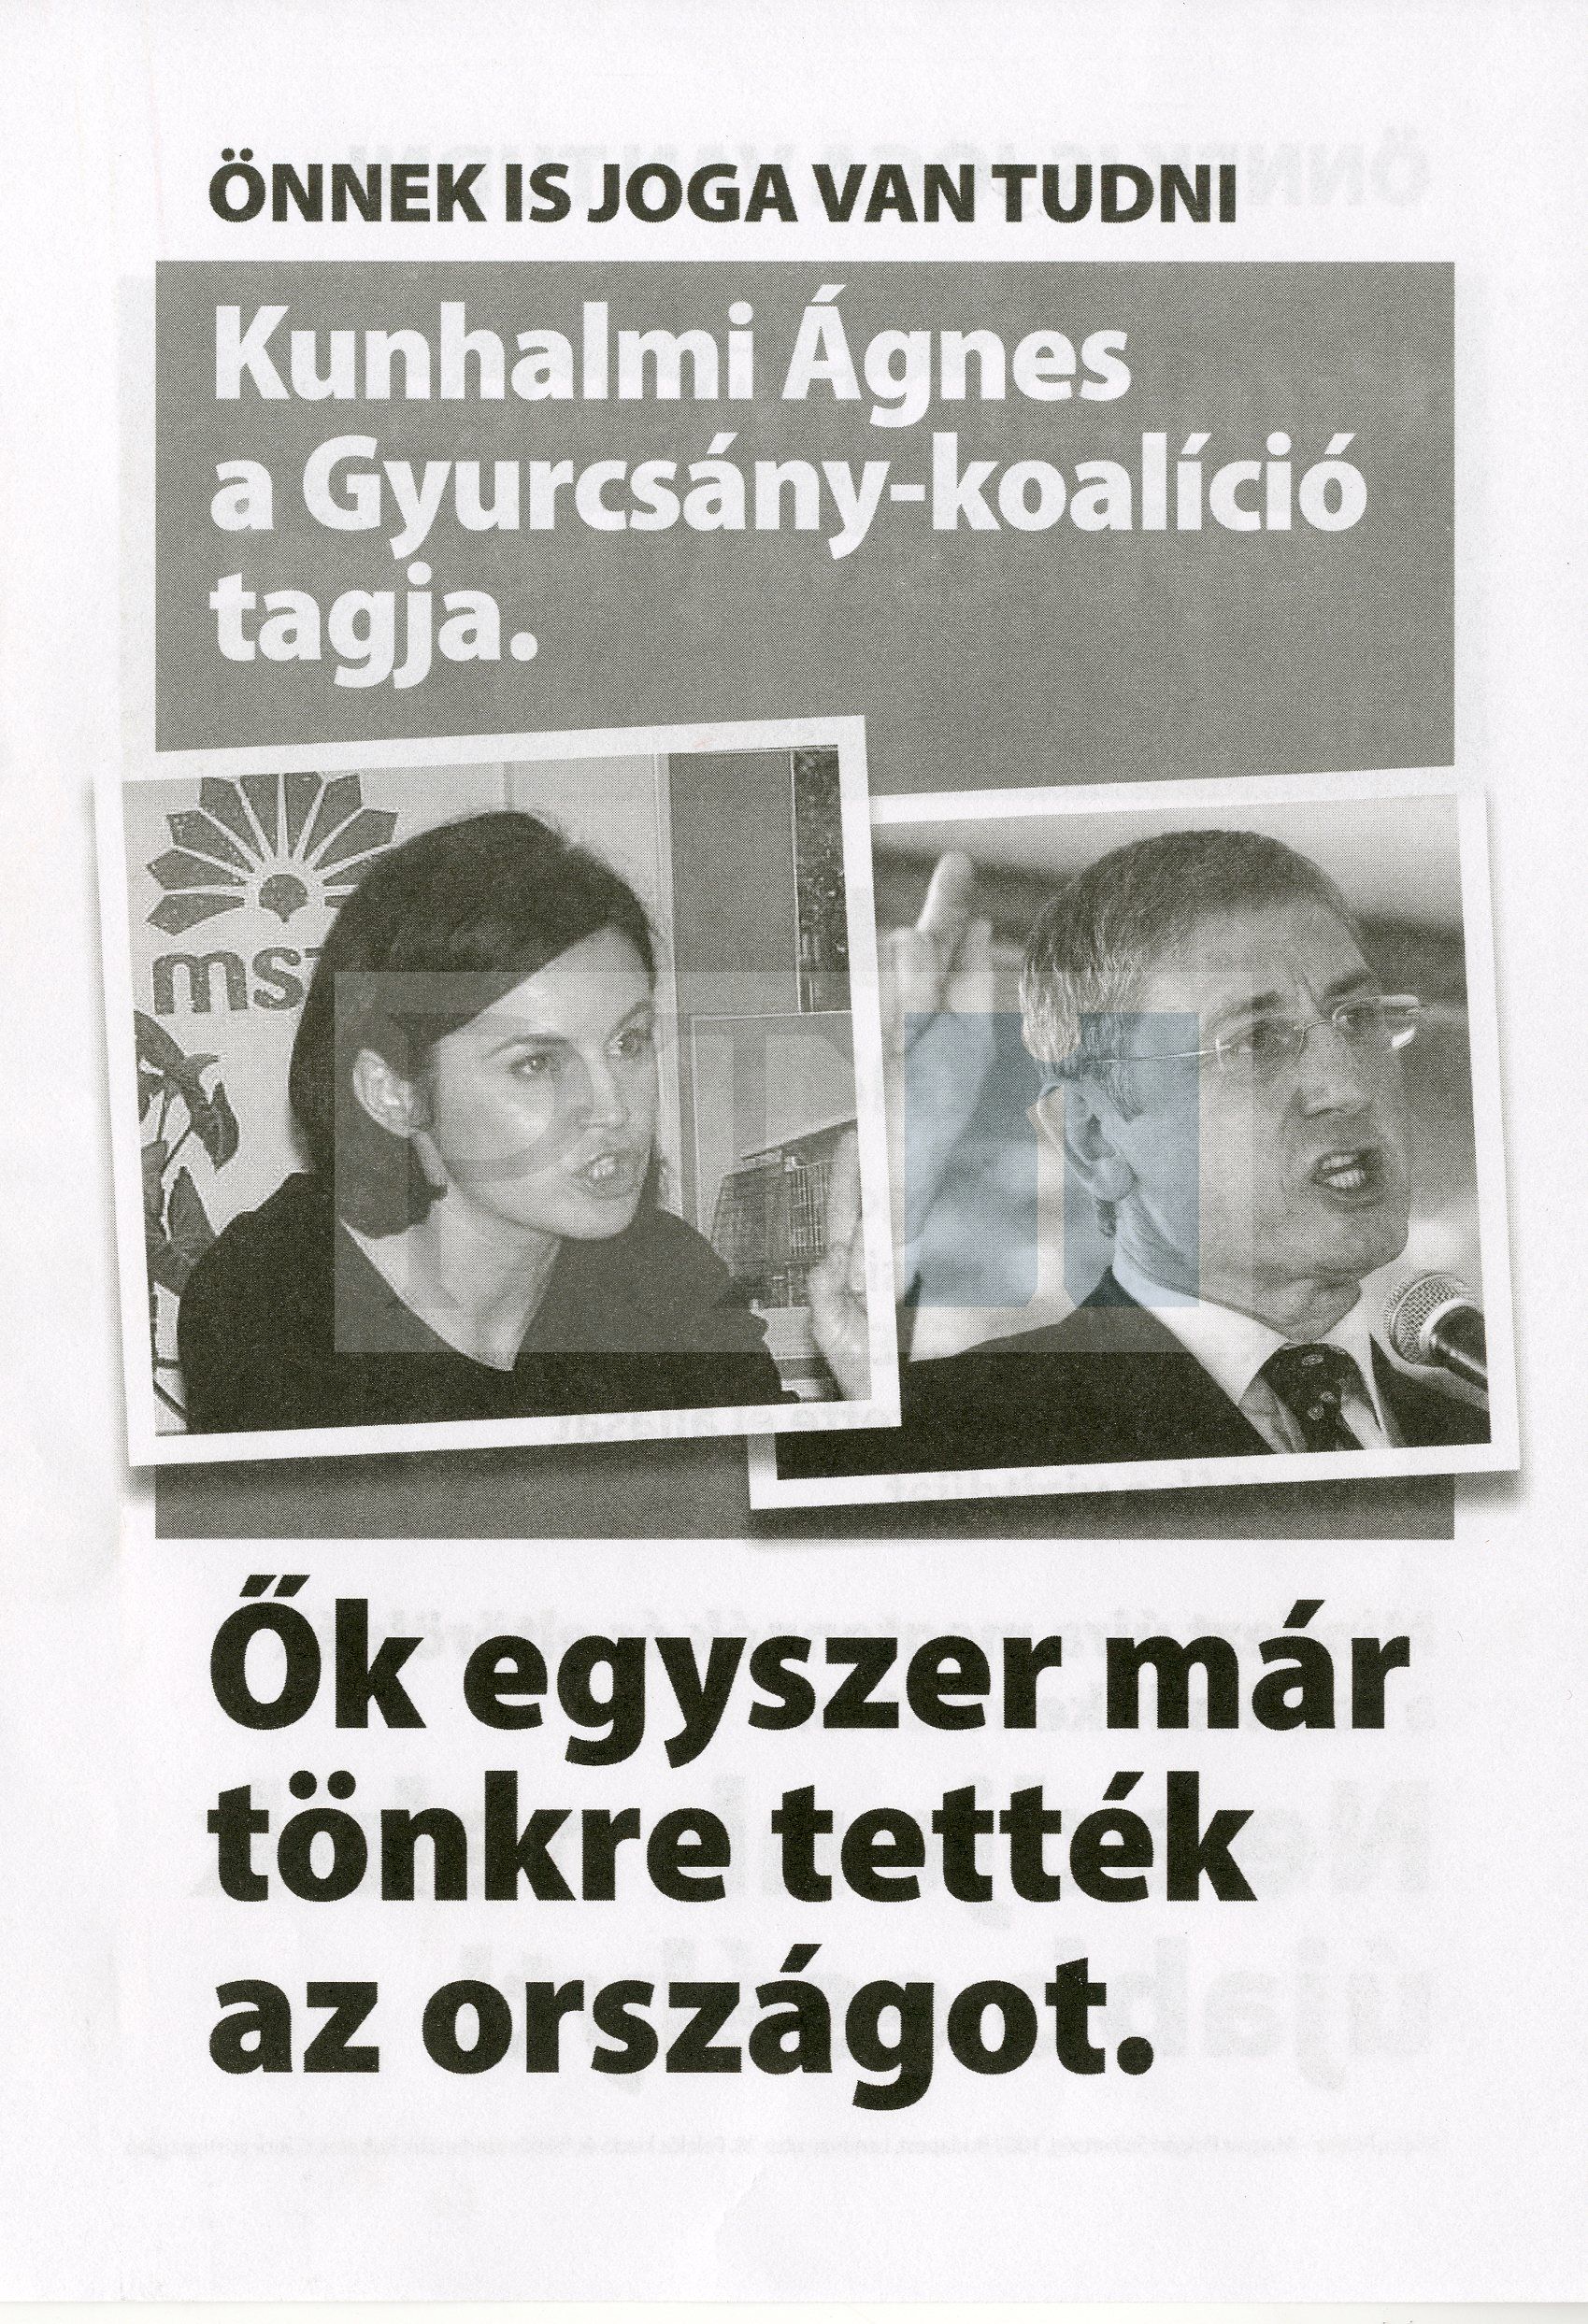 fidesz_anti-gyurcsany.jpg